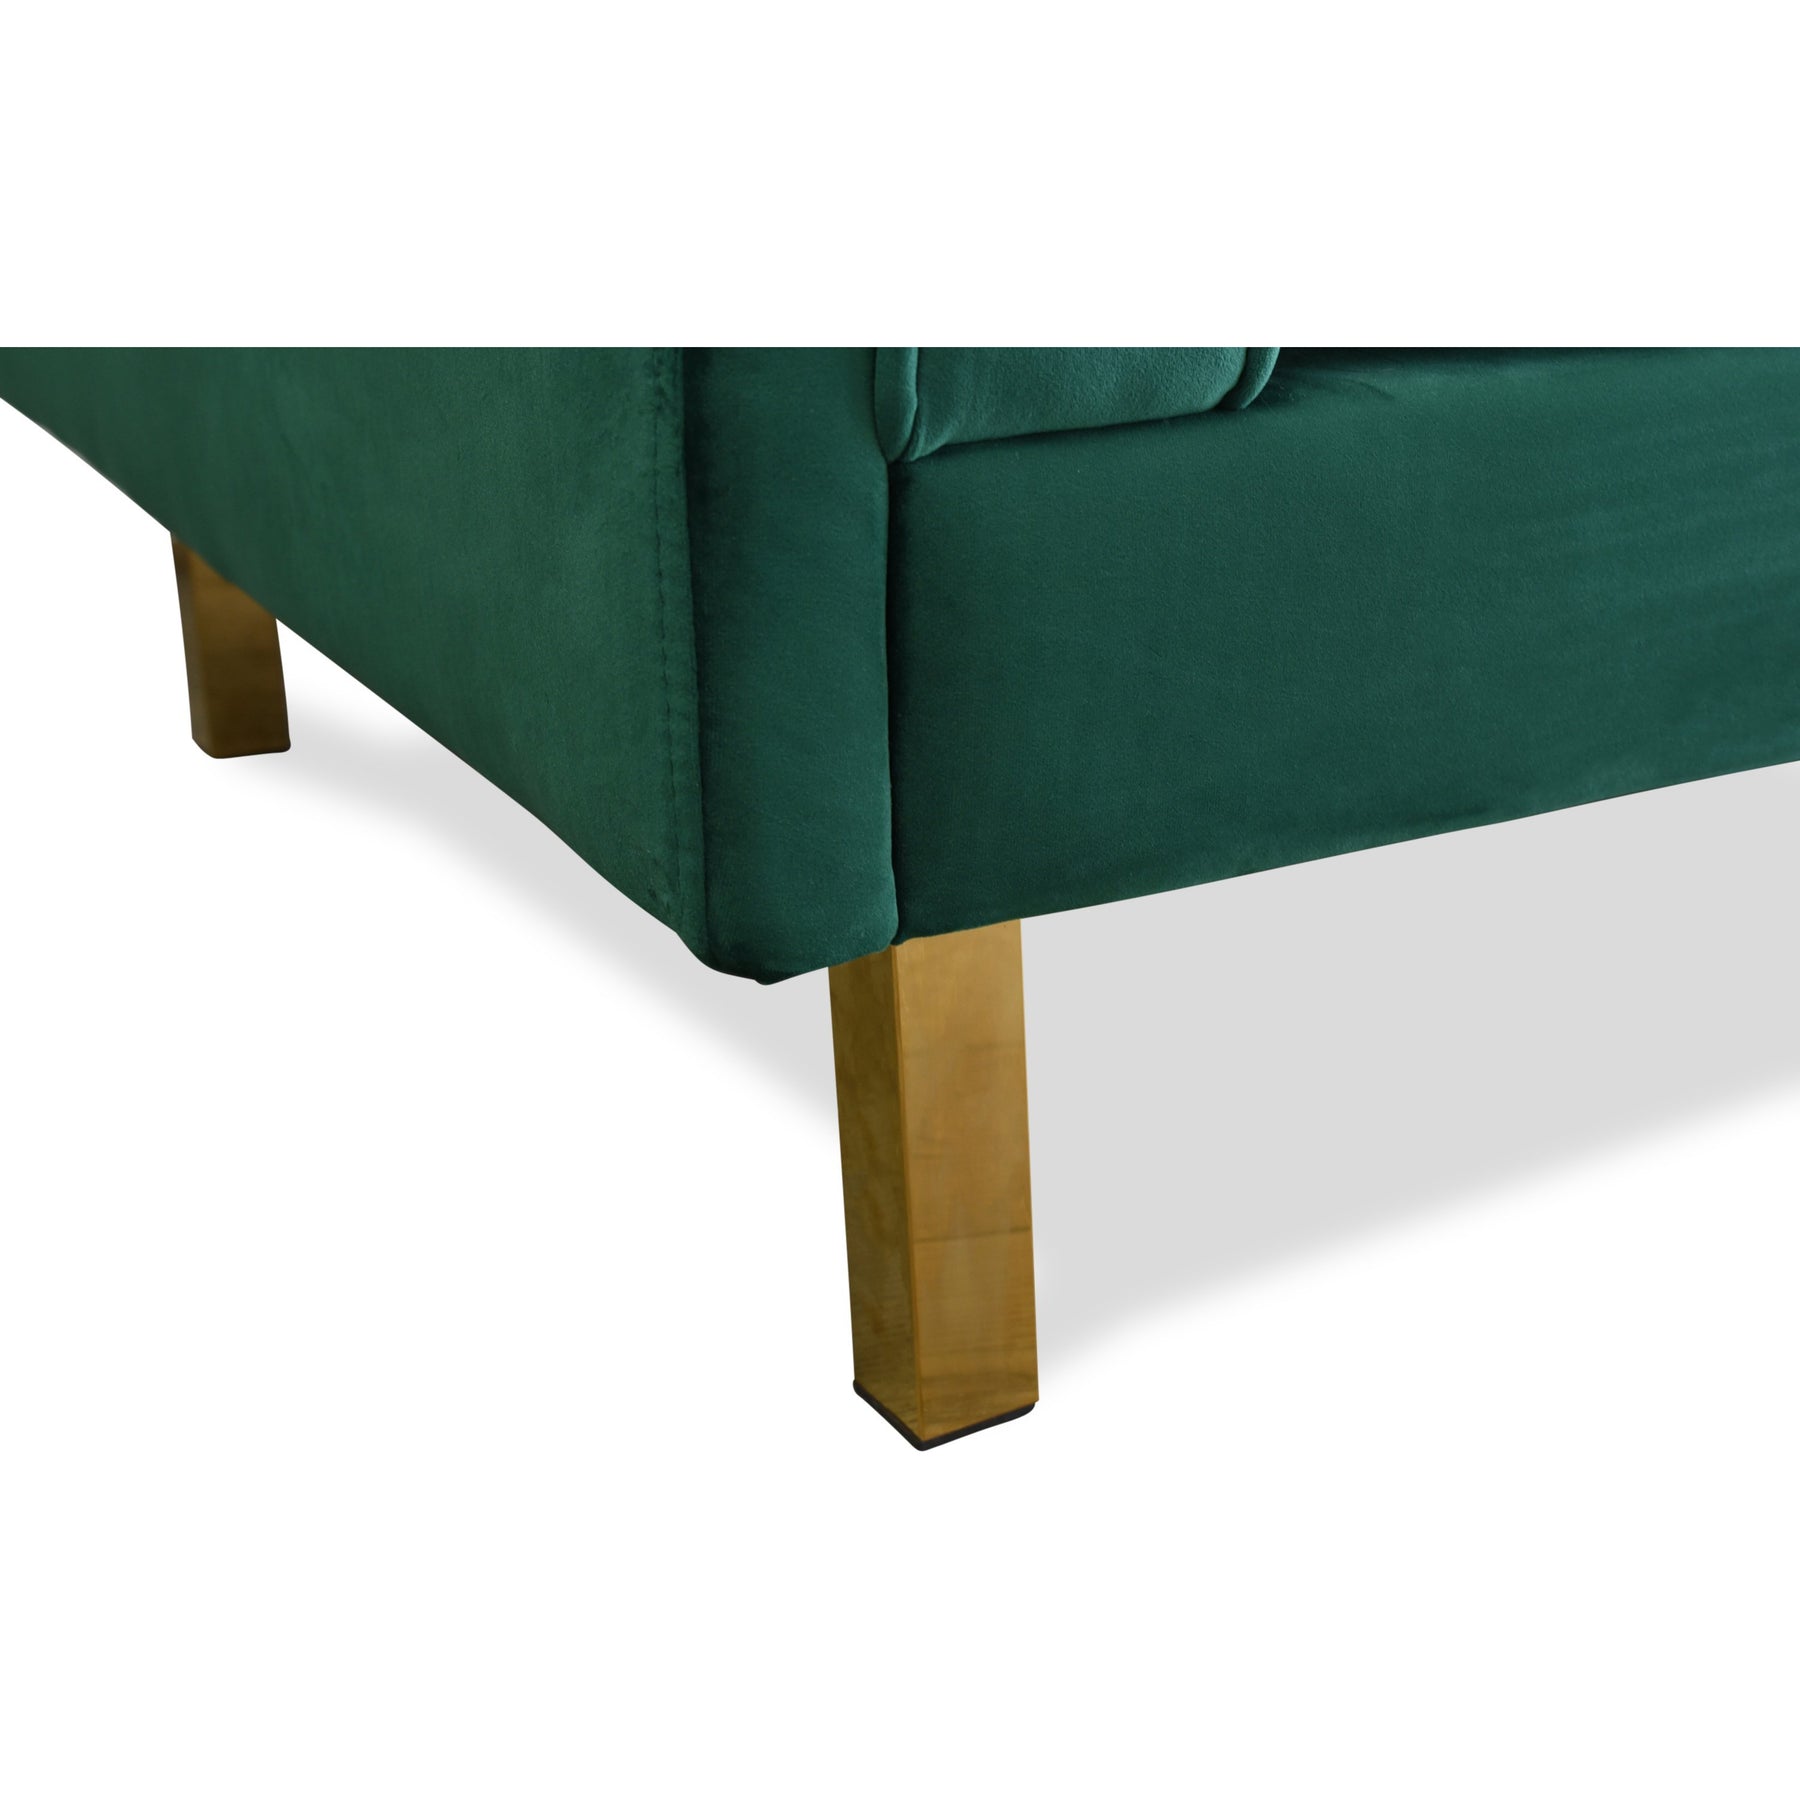 Edloe Finch Lexington Mid-Century Modern Velvet Sofa, Green Velvet